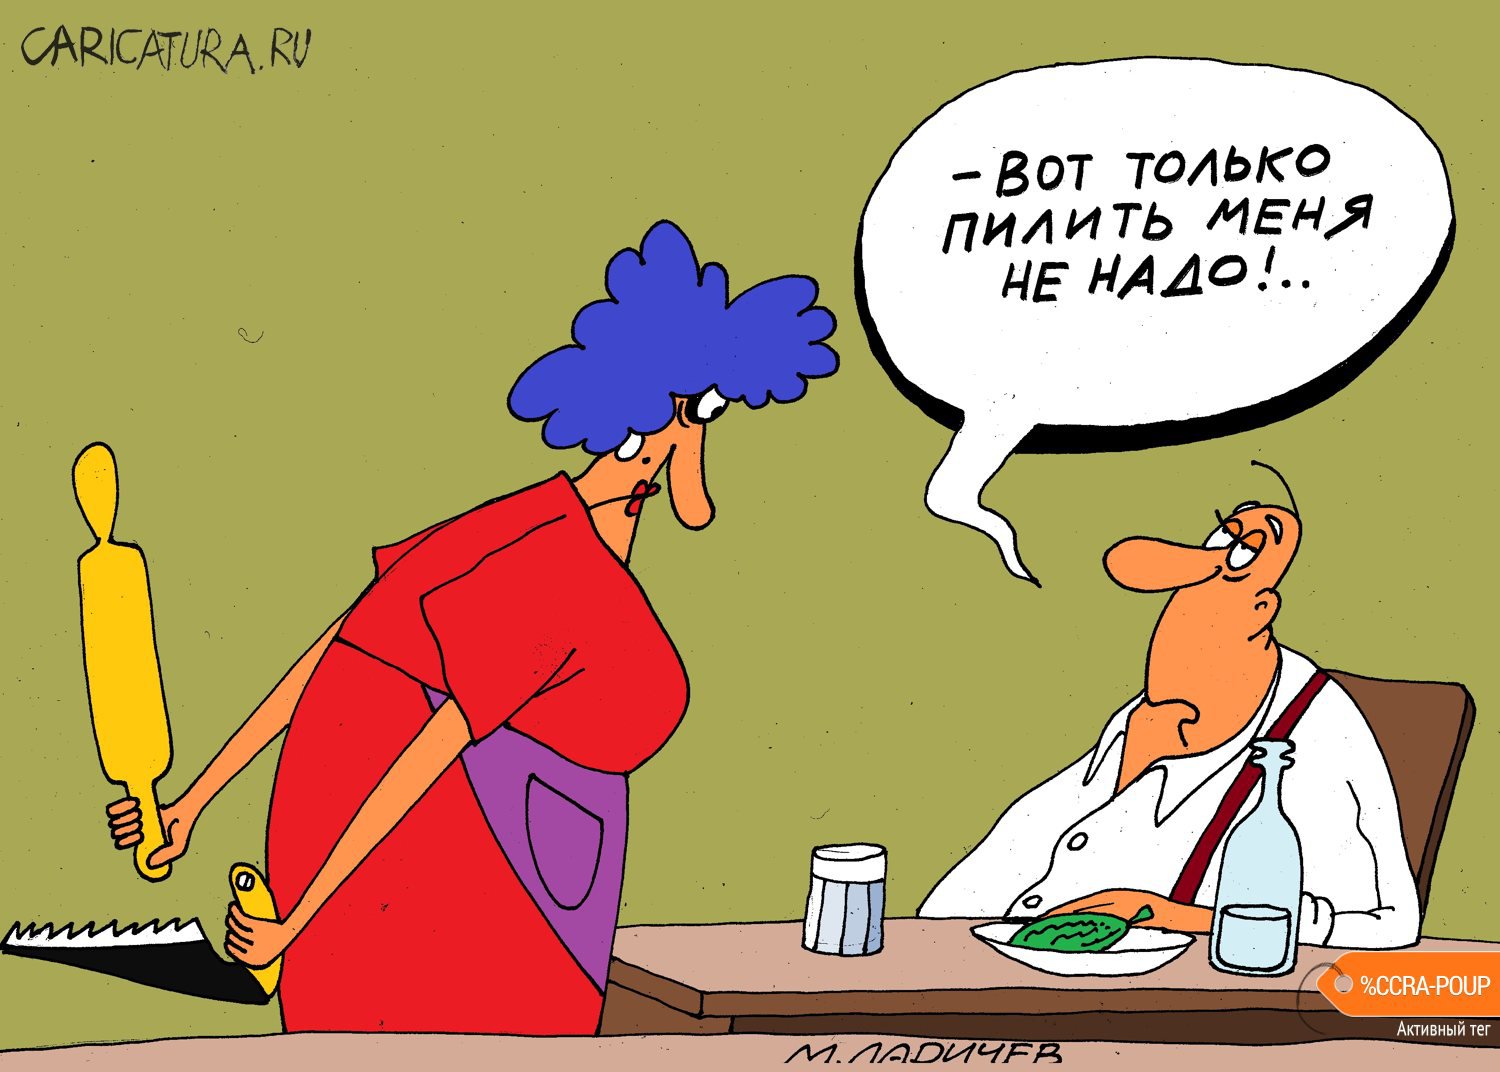 Карикатура "Выбор", Михаил Ларичев